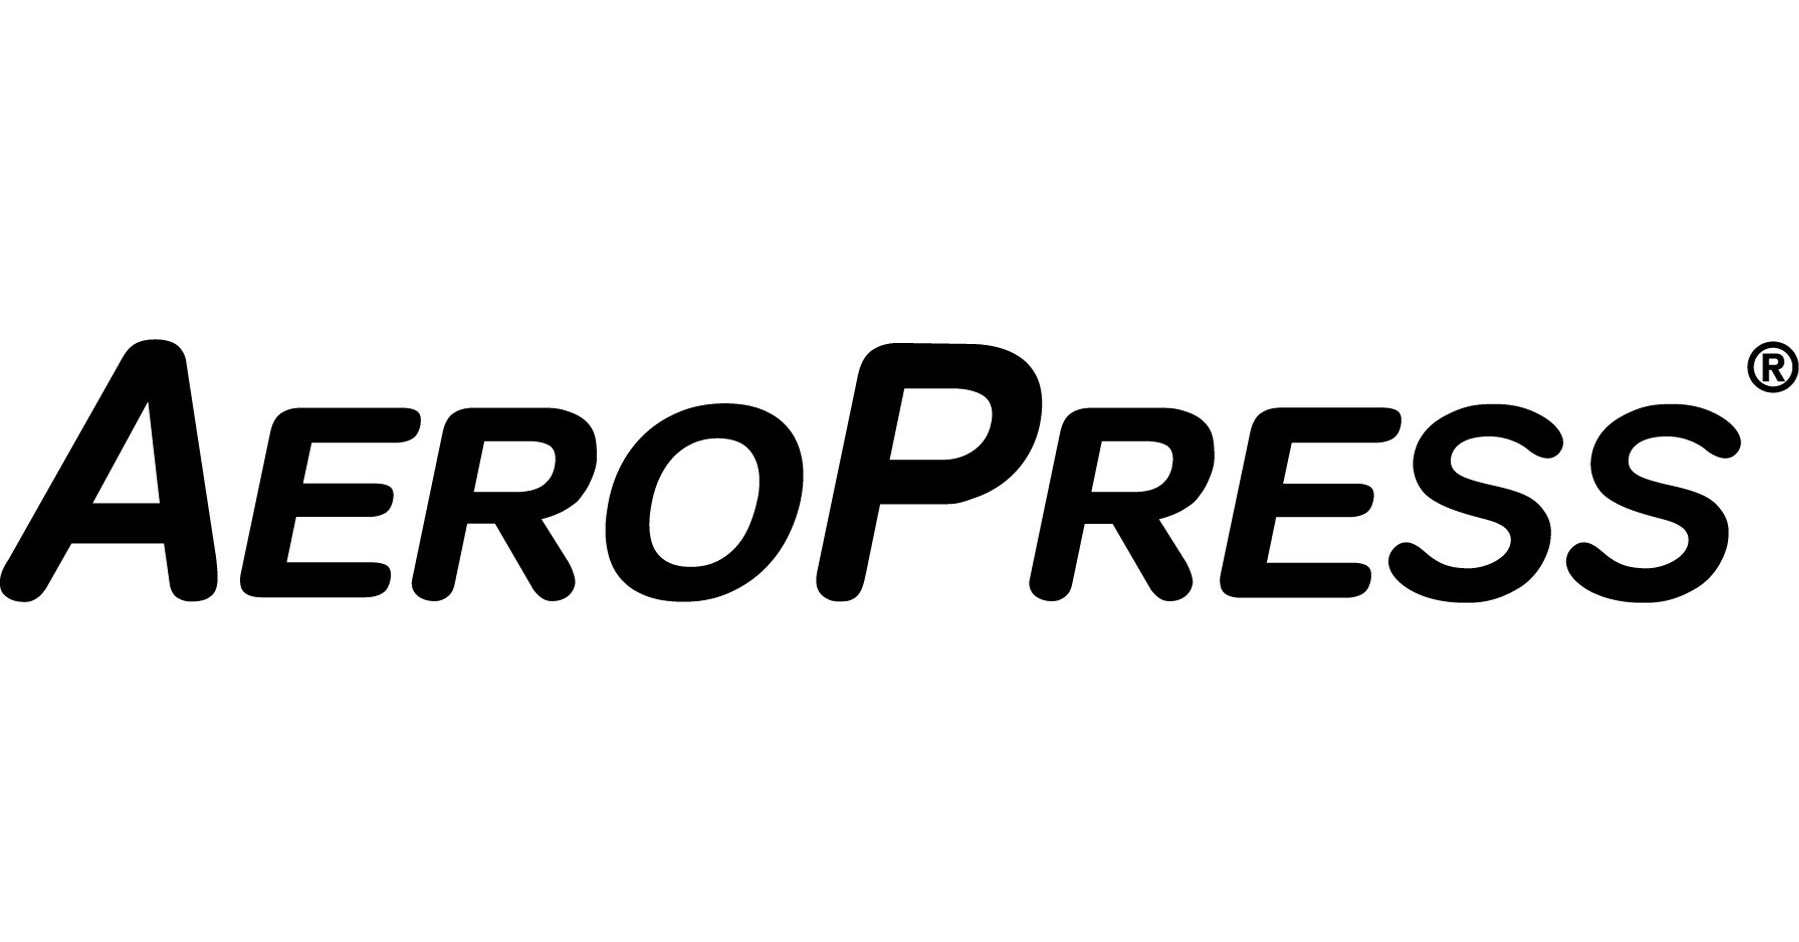 Aeropress Clear and Aeropress Premium shown in Frankfurt : r/AeroPress